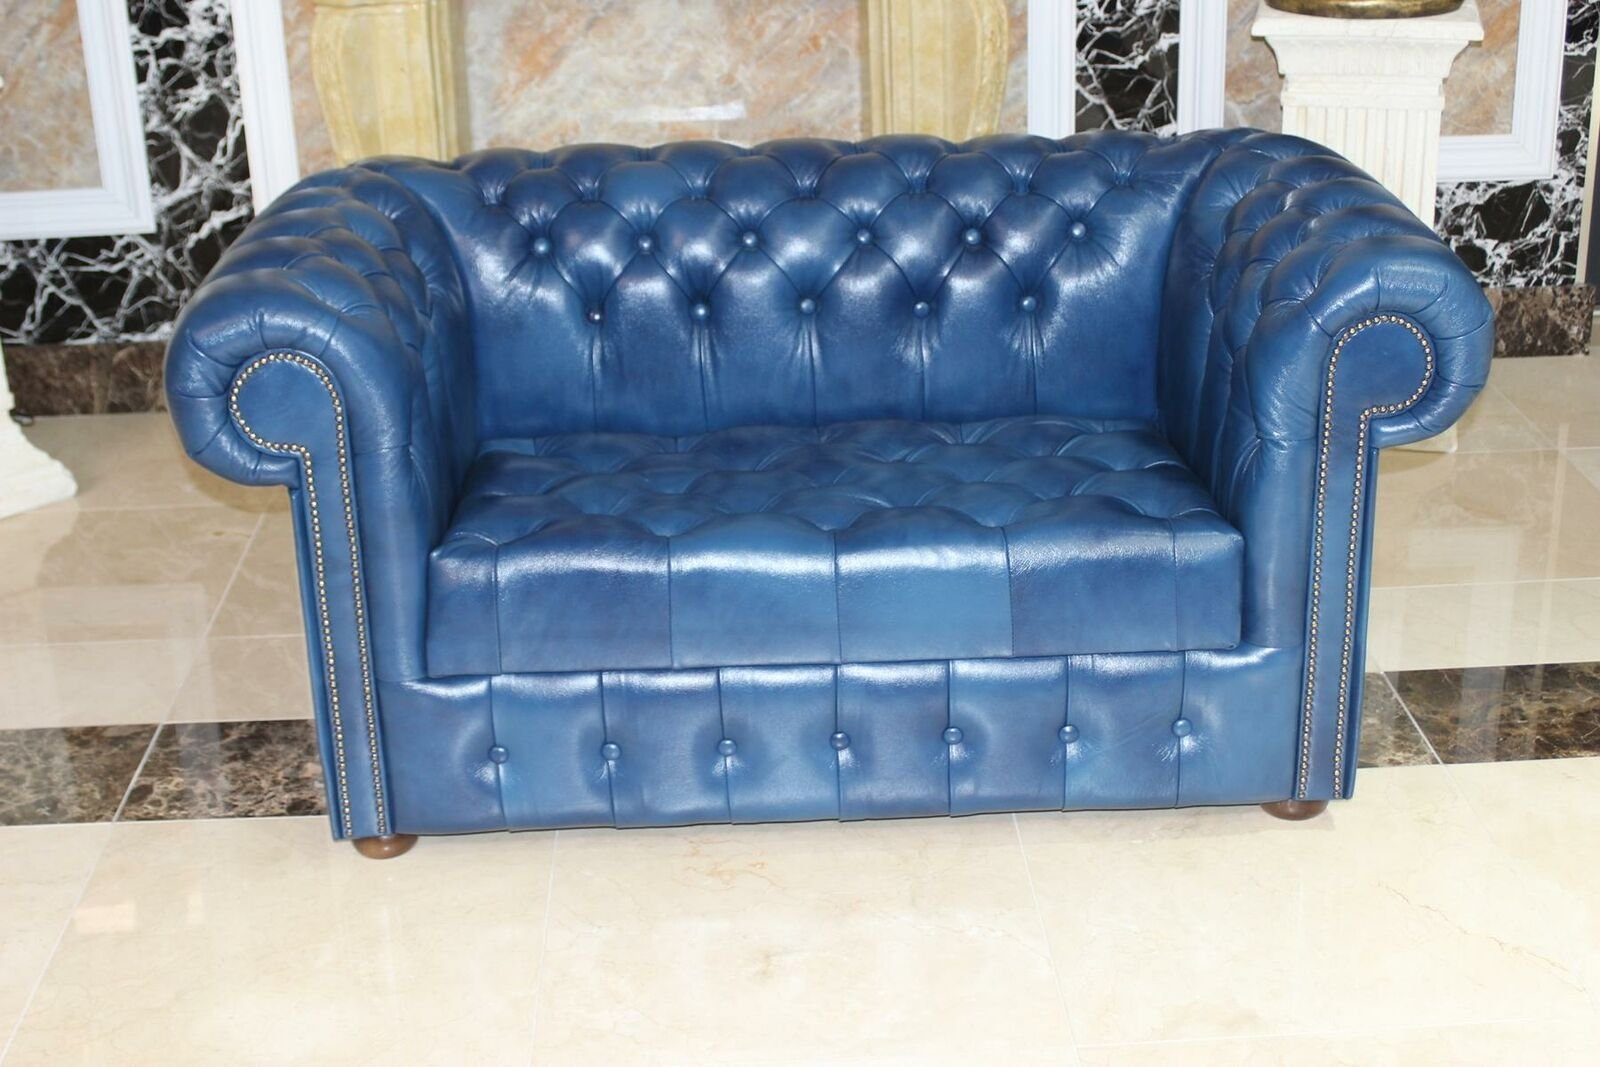 JVmoebel Chesterfield-Sofa »Chesterfield Blau 2 Sitzer Sofa Couch Echtleder  Leder Wohnzimmer Sofa Neu Sofort« online kaufen | OTTO